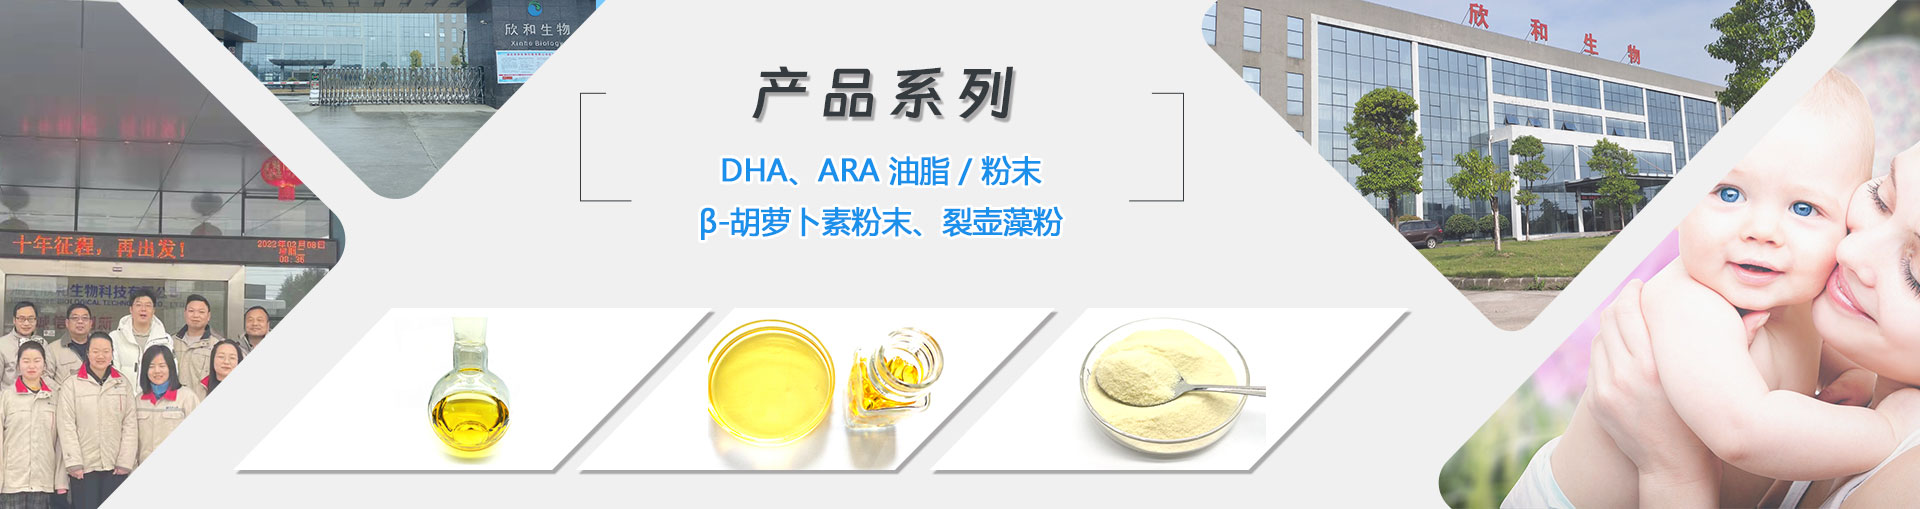 DHA algal oil, DHA Algal oil powder, Arachidonic Acid Oil, Sn-2 DHA Algal oil